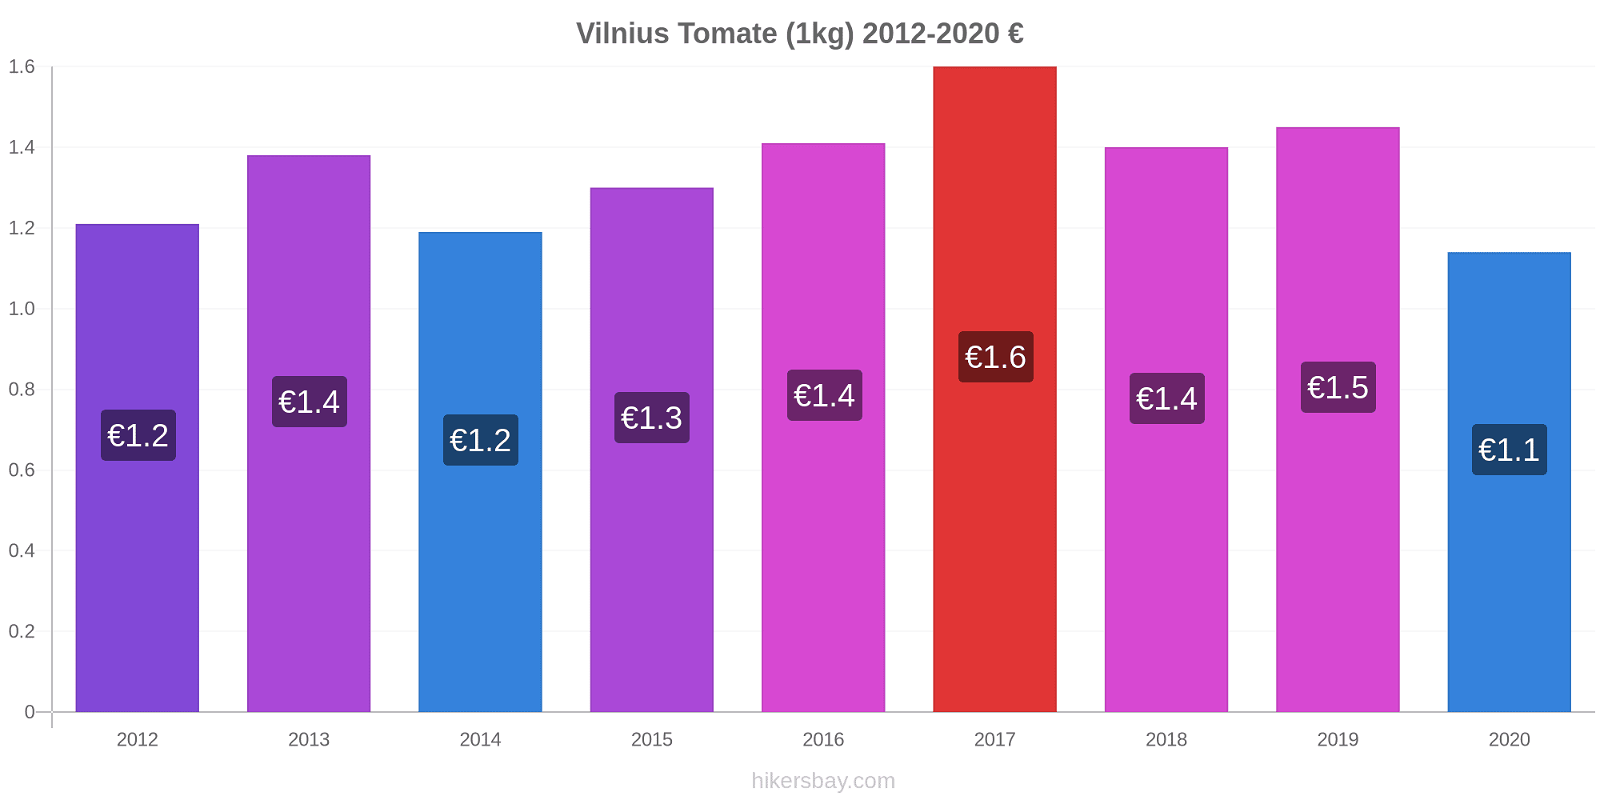 Vilnius variação de preço Tomate (1kg) hikersbay.com